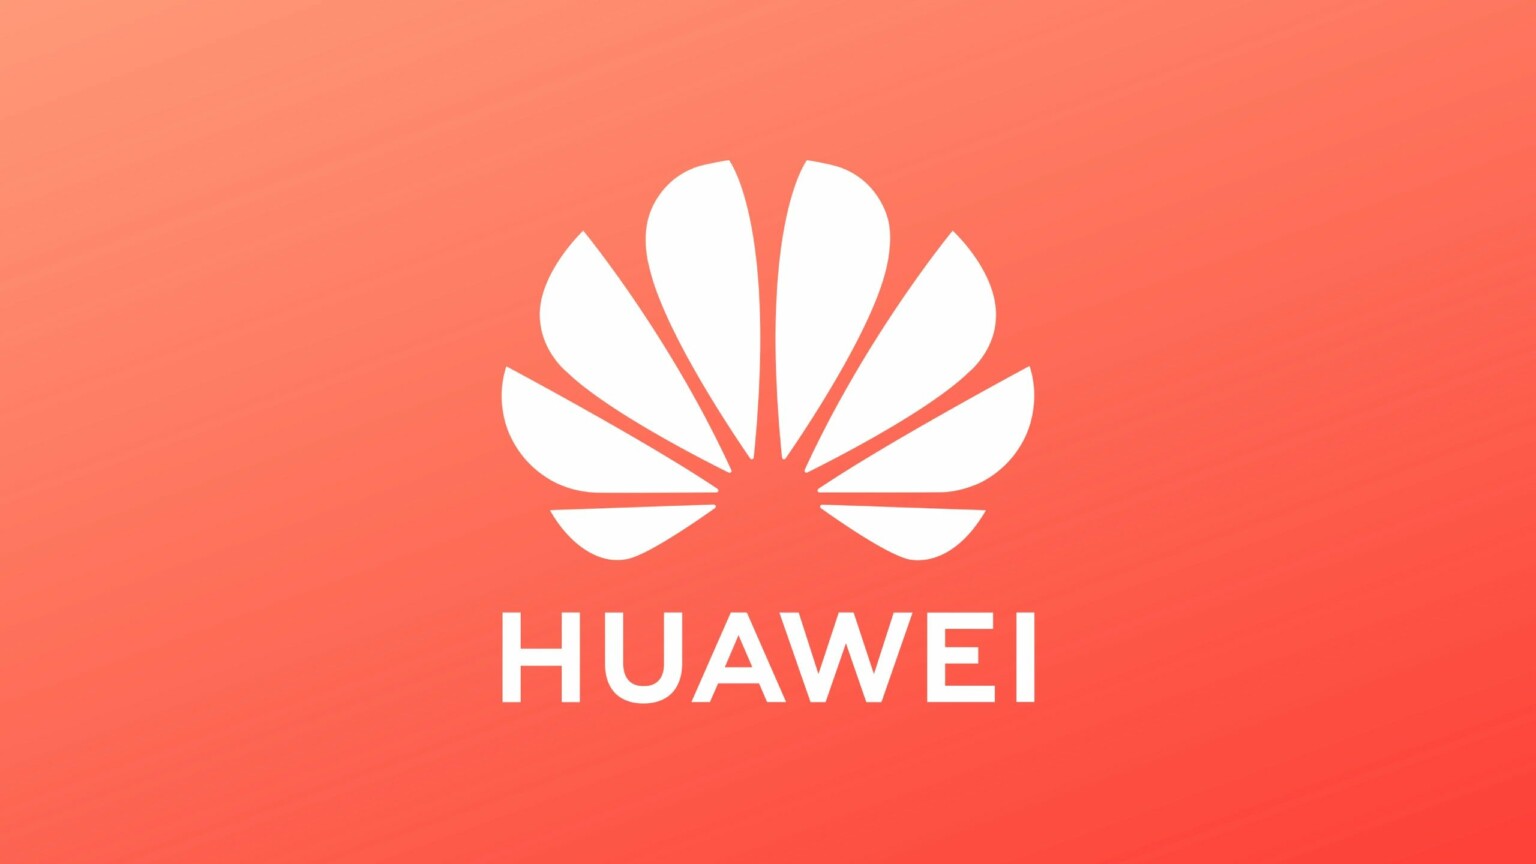 #Huaweigate